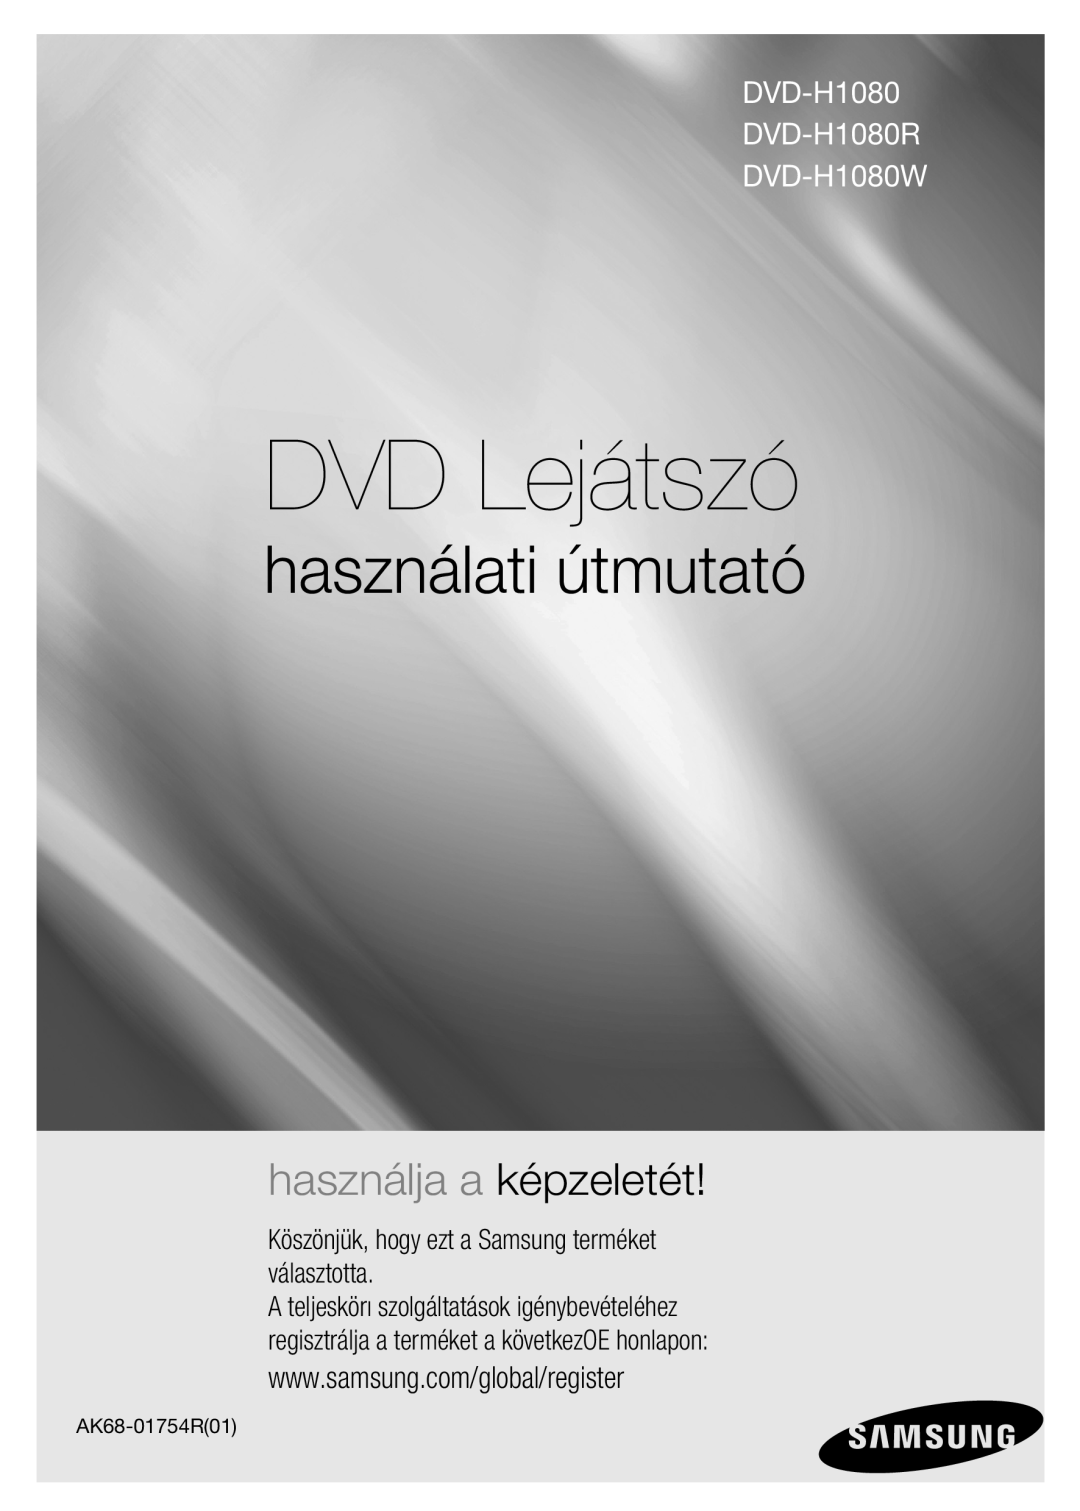 Samsung DVD-H1080W/EDC manual DVD Lejátszó, használati útmutató, használja a képzeletét, DVD-H1080 DVD-H1080R DVD-H1080W 